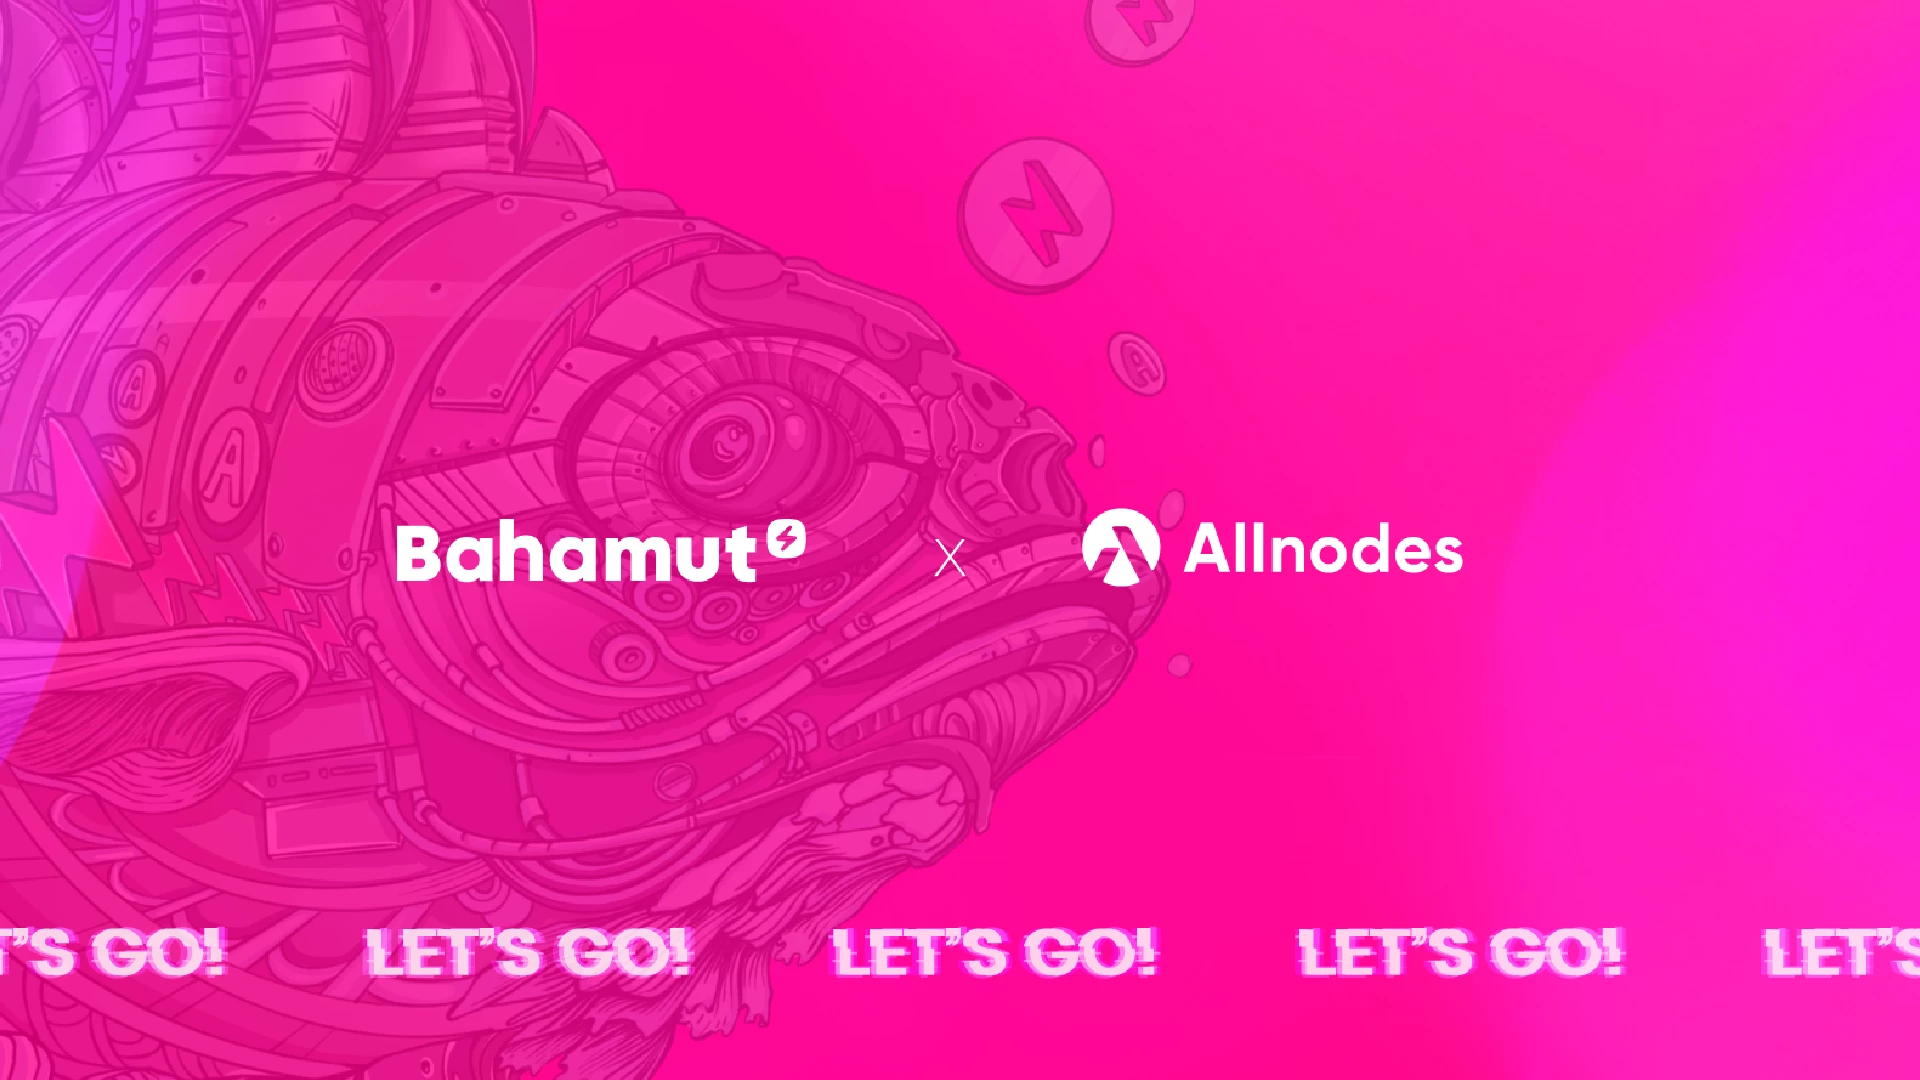 تعلن Bahamut عن شراكة جديدة وهذه المرة مع Allnodes